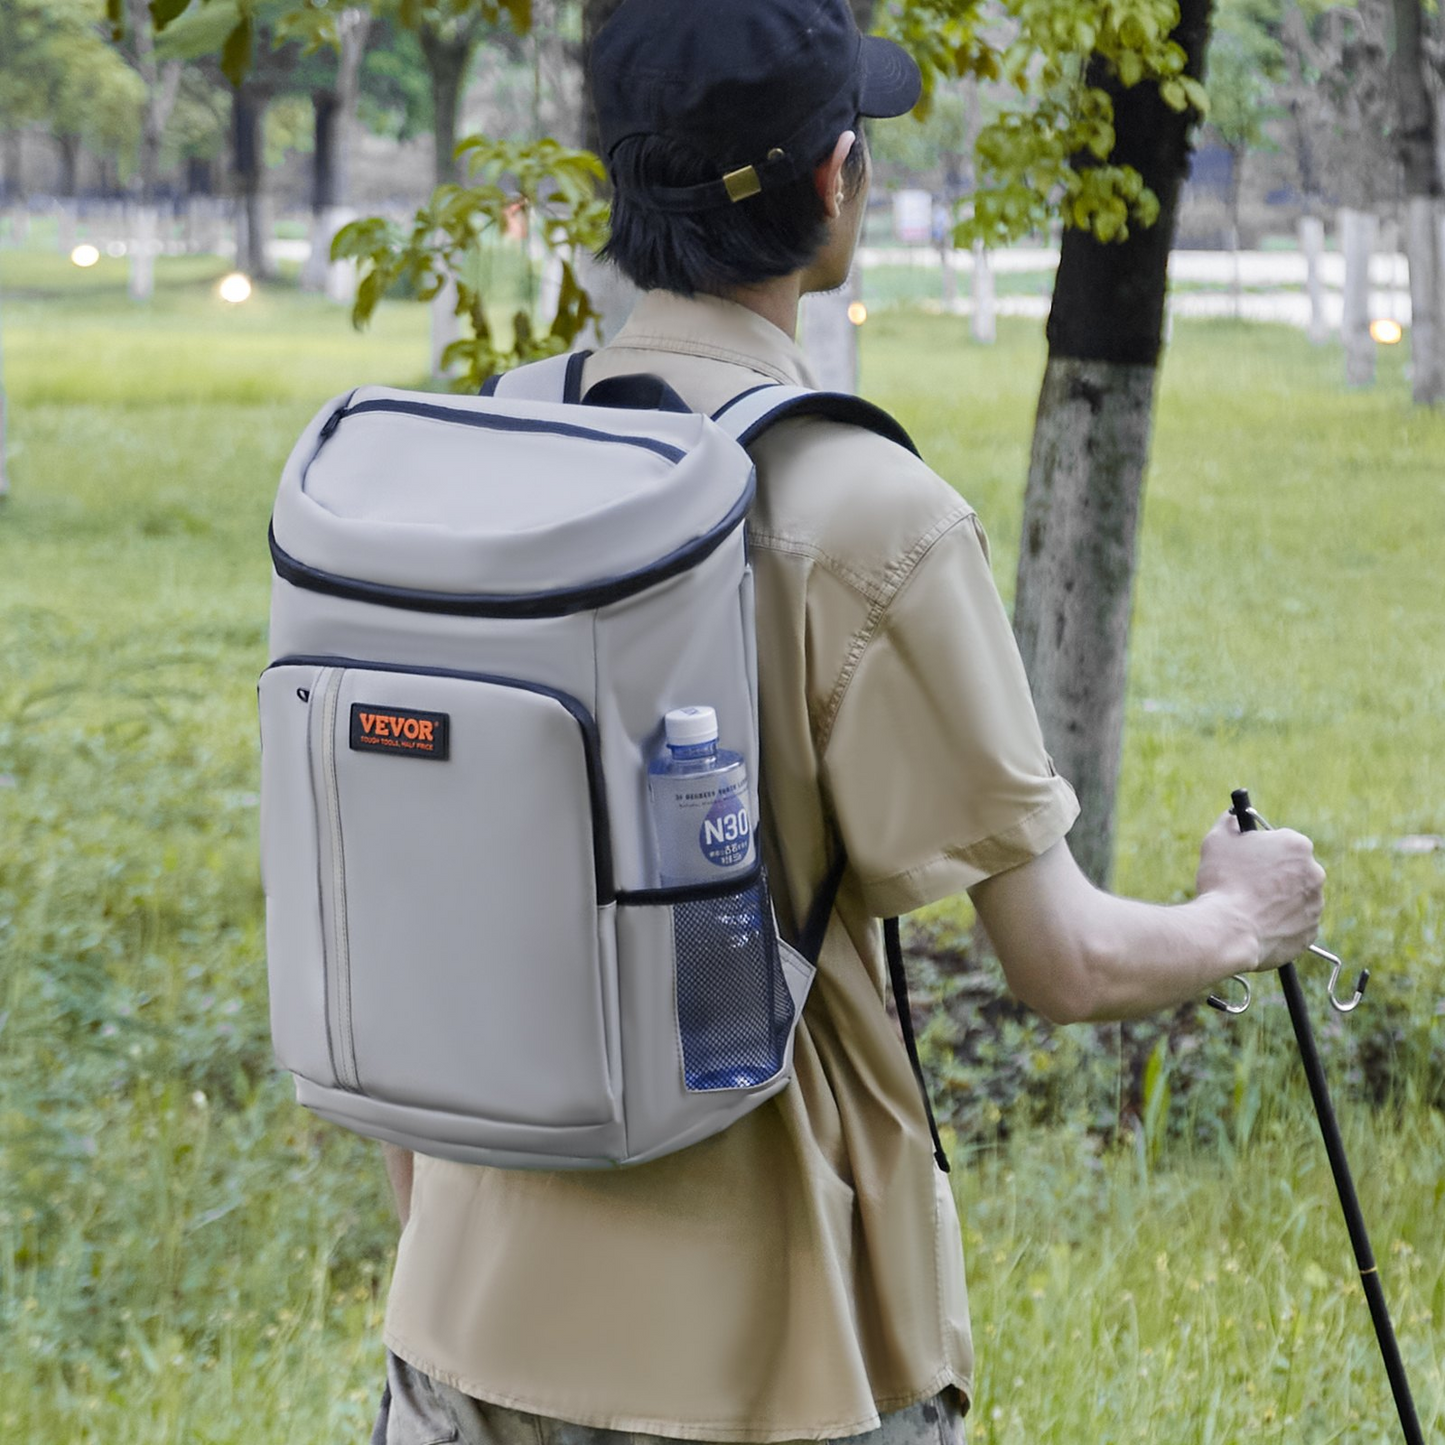 VEVOR Cooler Backpack, 28 Cans Leakproof Insulated Waterproof Backpack Cooler